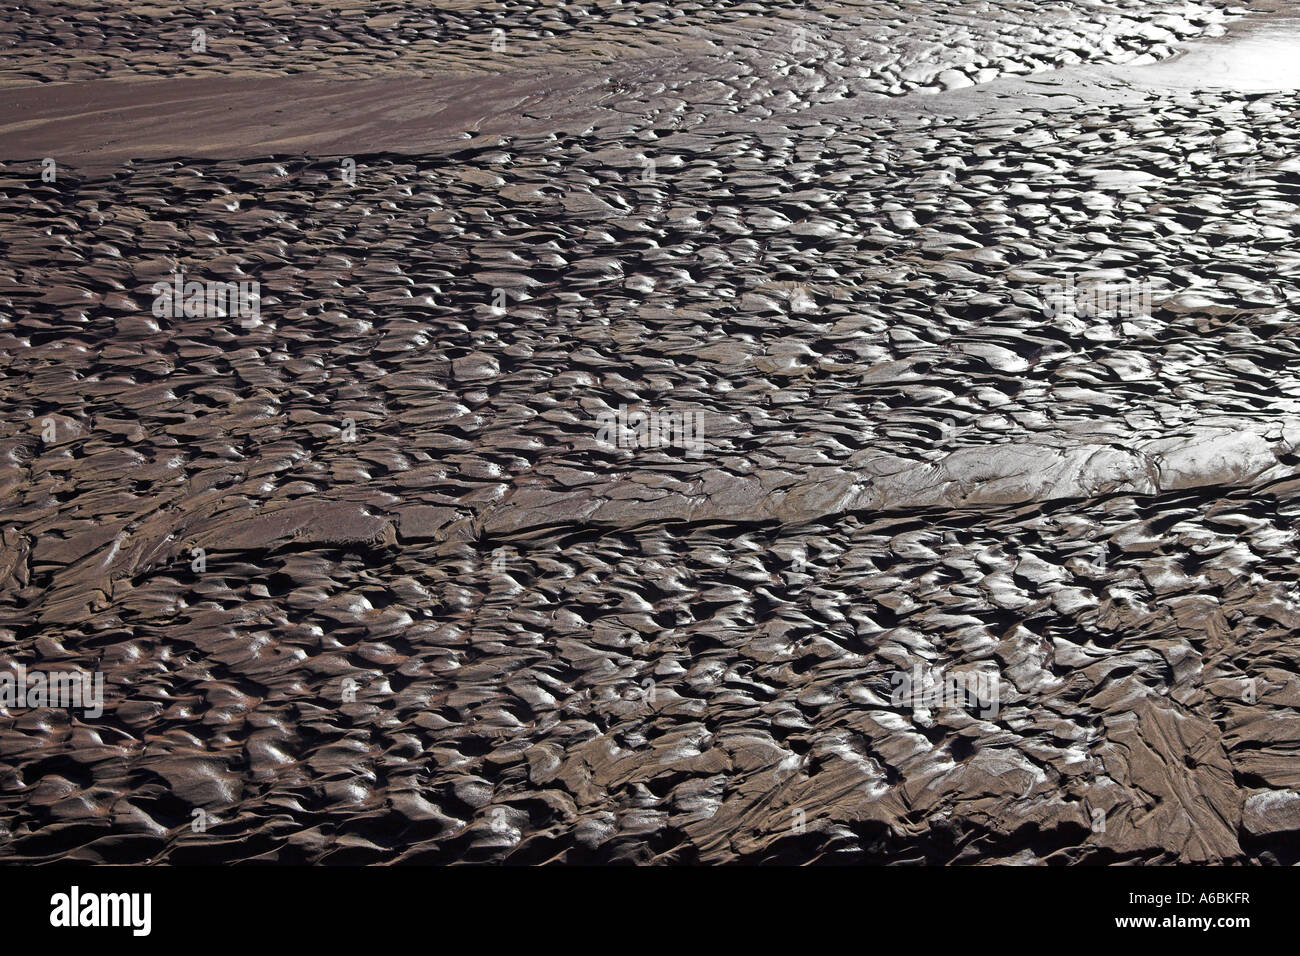 Rippled sand sur lit de rivière Canyon de Chelly National Monument Arizona USA Banque D'Images